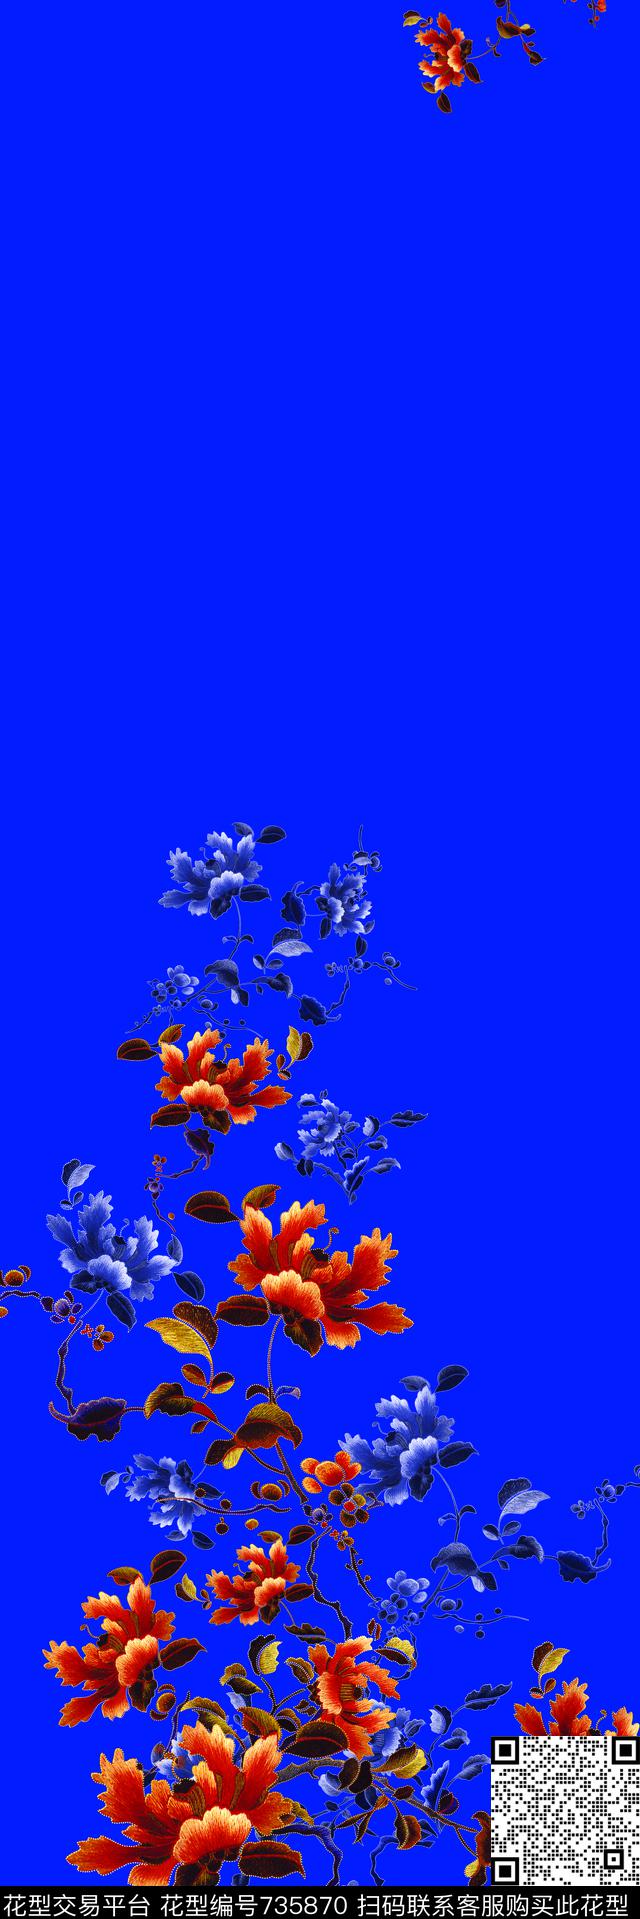 0733.tif - 735870 - 旗袍花型 数码花型 中国风 - 数码印花花型 － 女装花型设计 － 瓦栏